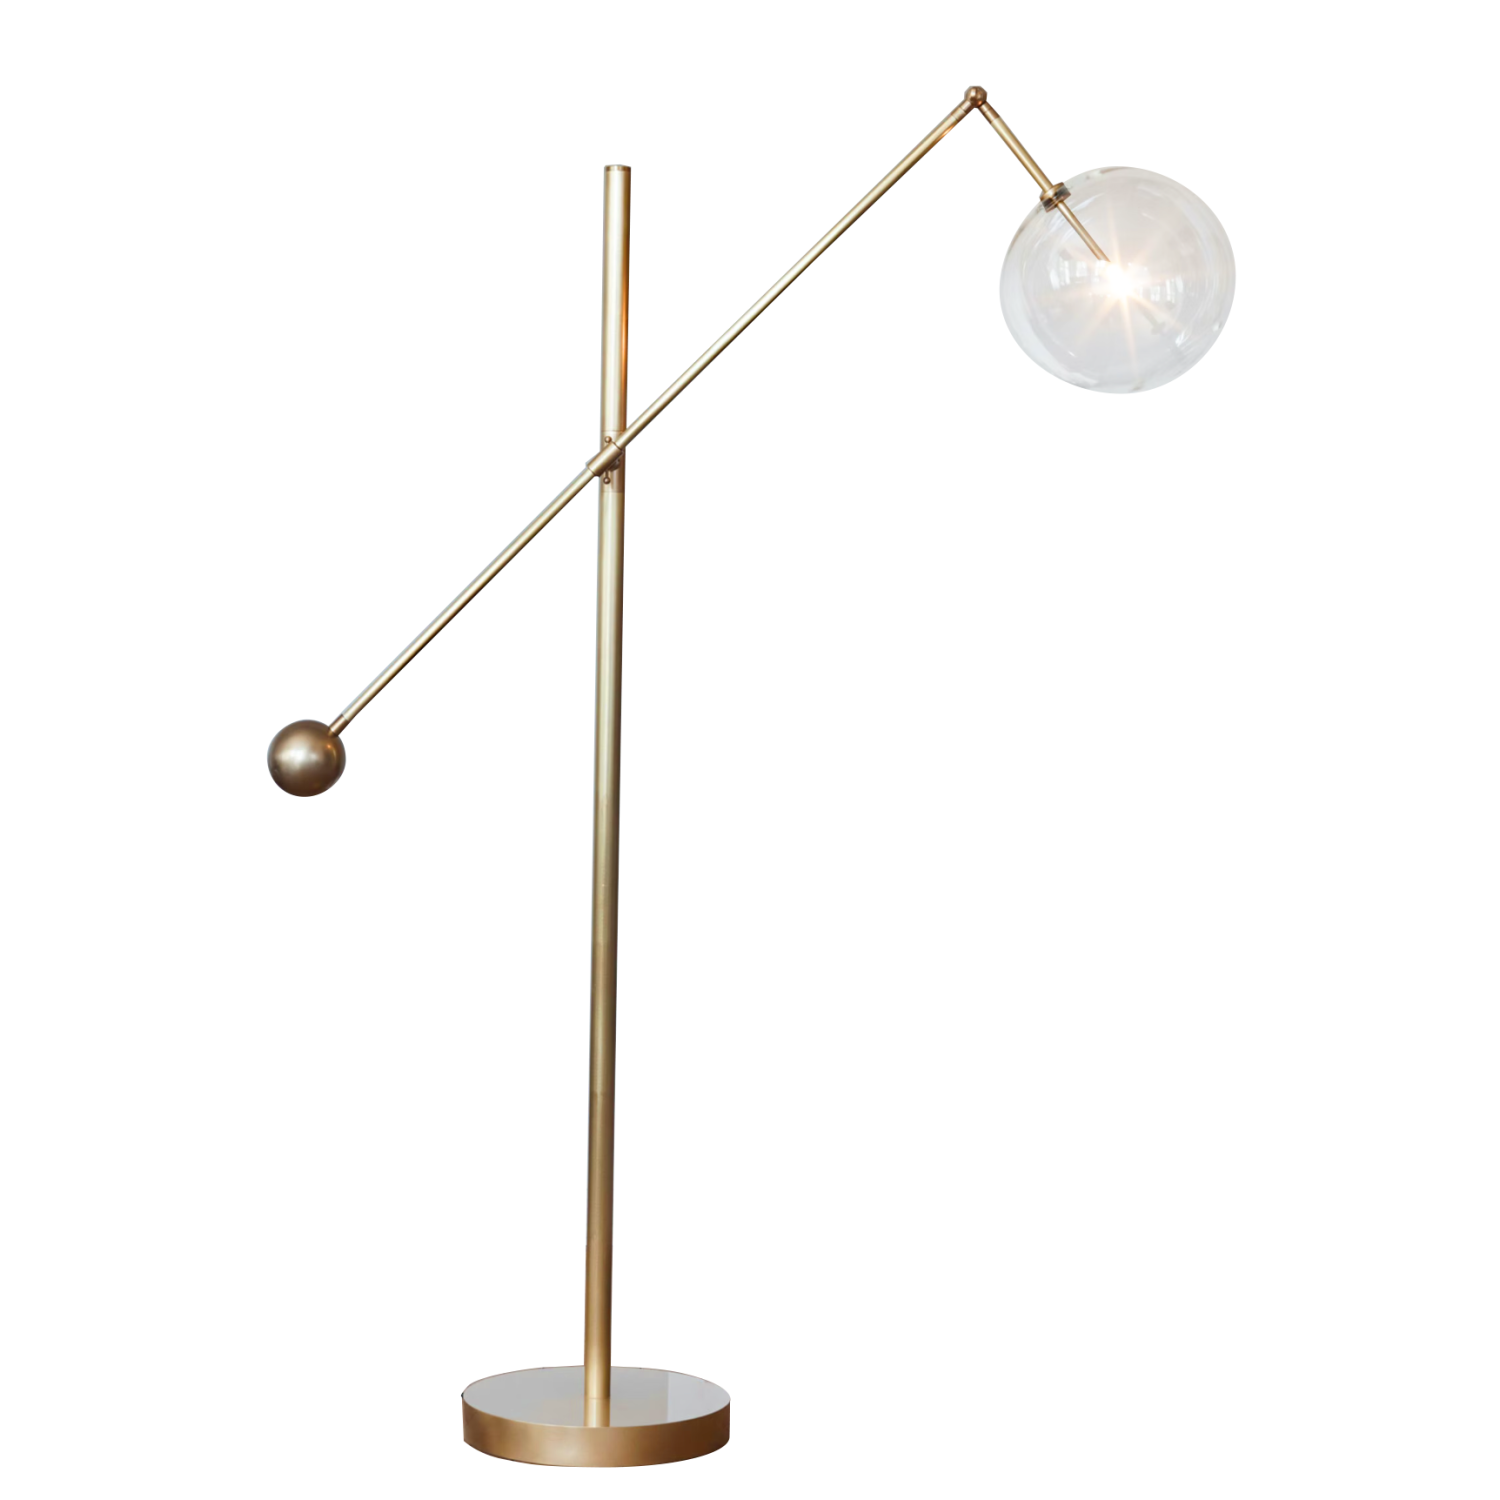 MILAN 1 - Floor Lamp